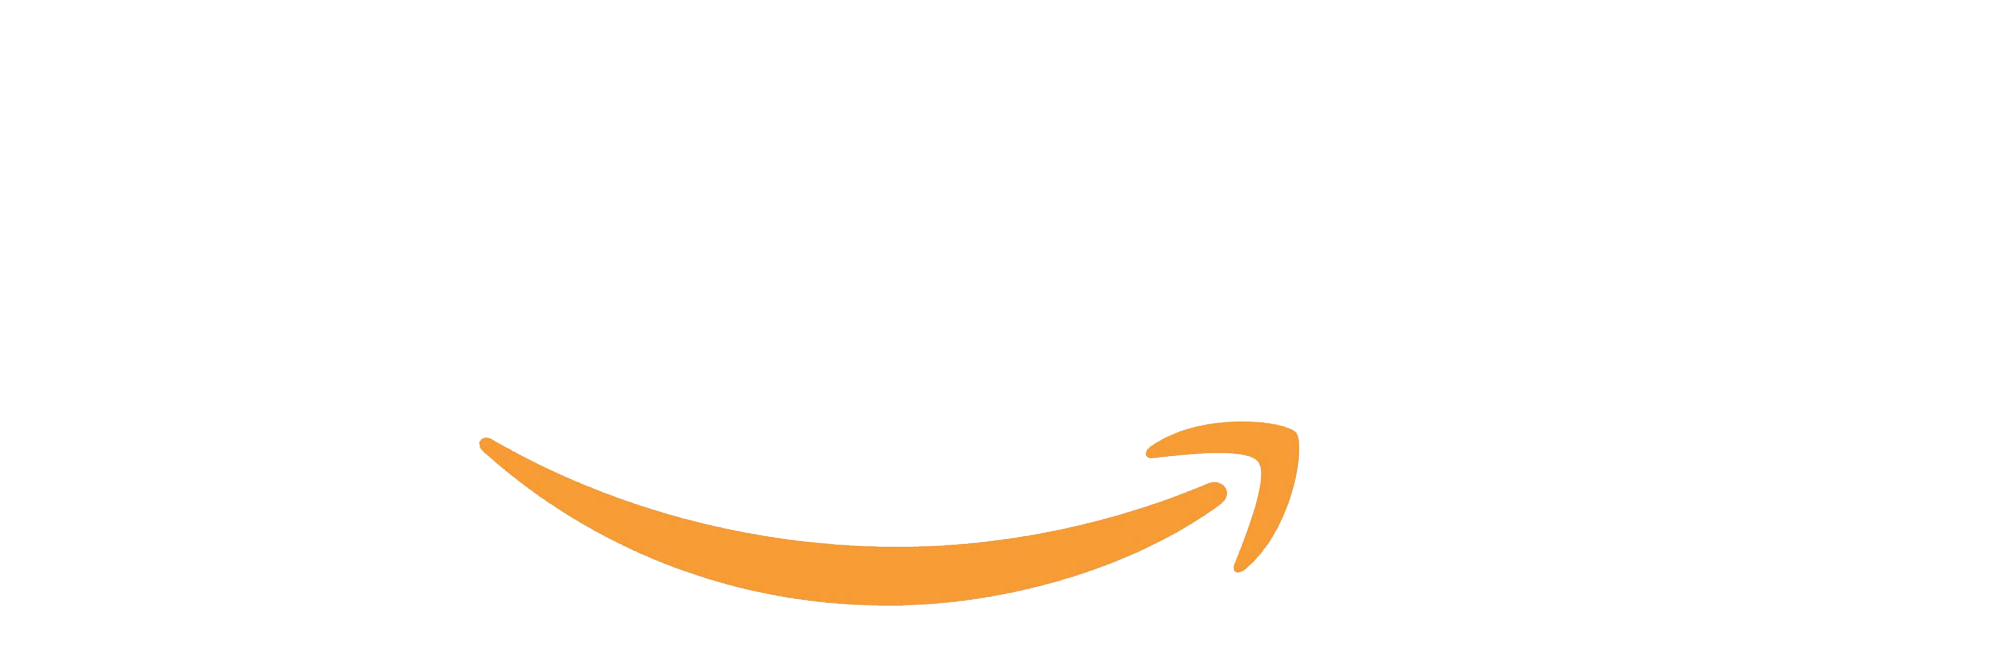 Sonia Liebing bei Amazon kaufen